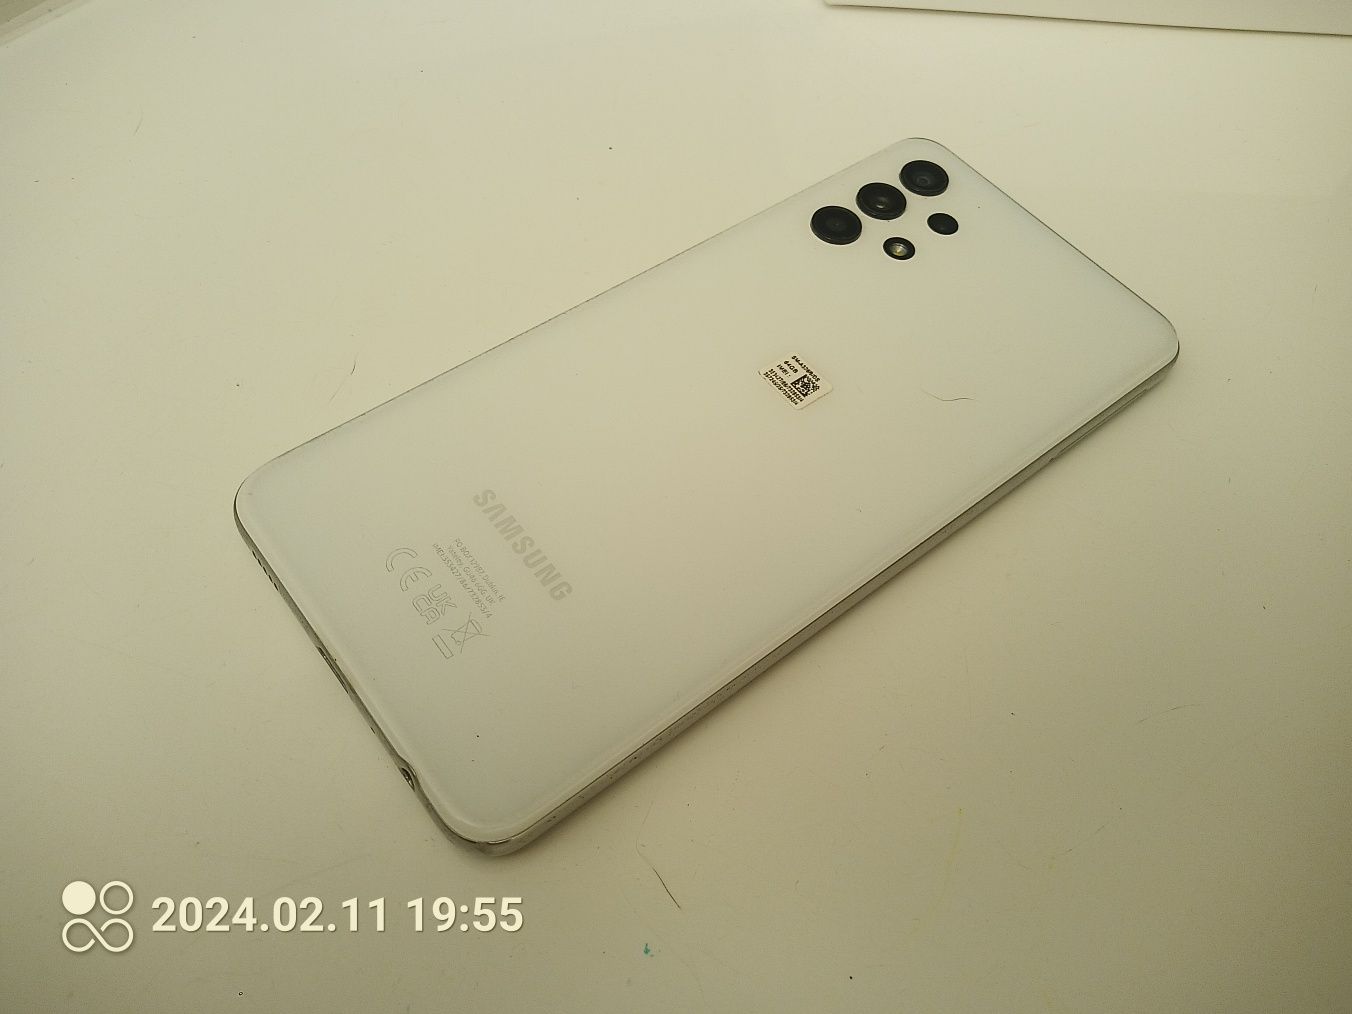 Samsung Galaxy A32 5G awesome white 4/64GB jak nowy, idealny stan.